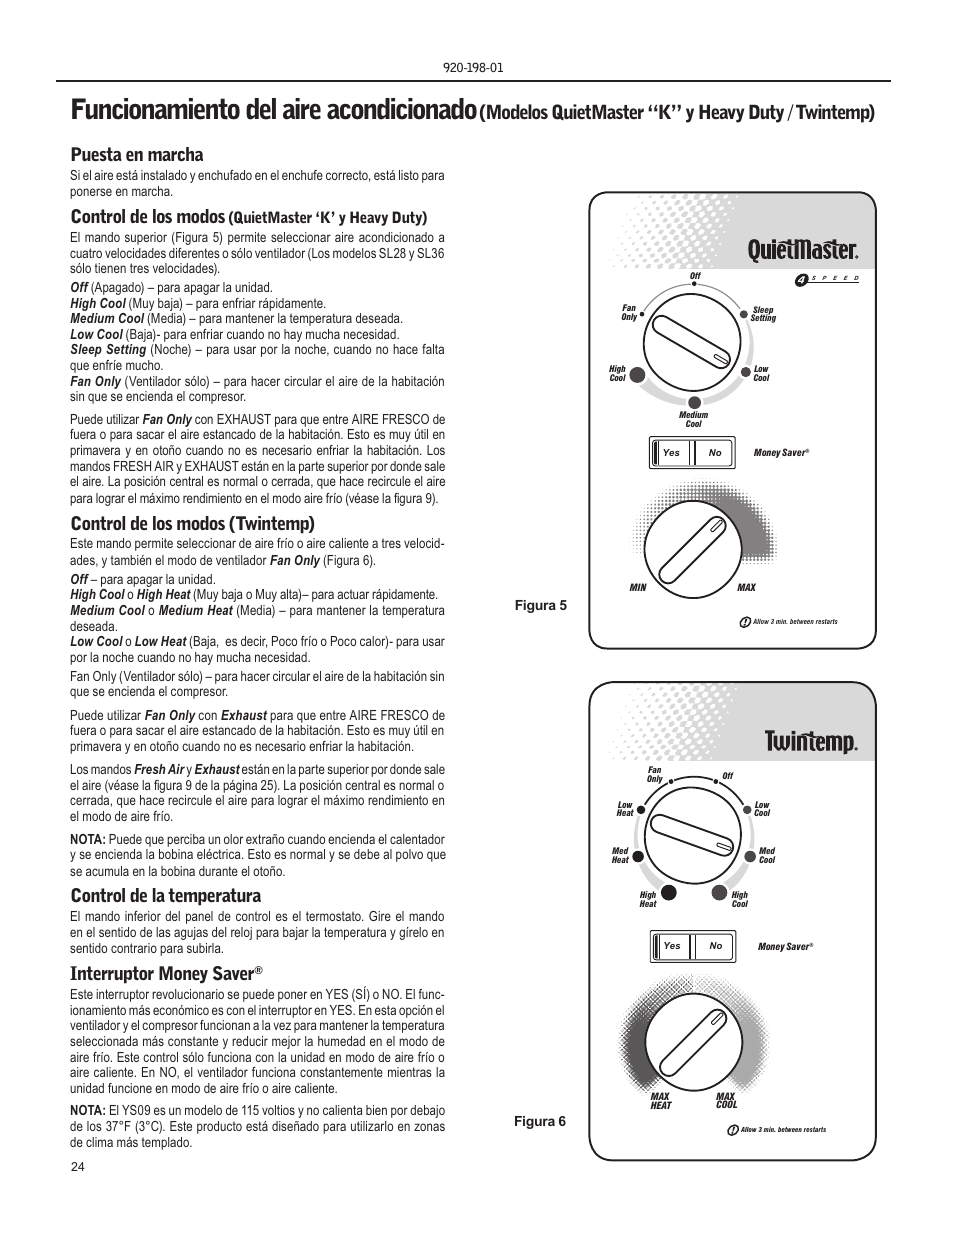 Funcionamiento del aire acondicionado, Modelos quietmaster “k” y heavy duty  / twintemp), Puesta en marcha | Friedrich KM18 User Manual | Page 24 / 56 |  Original mode